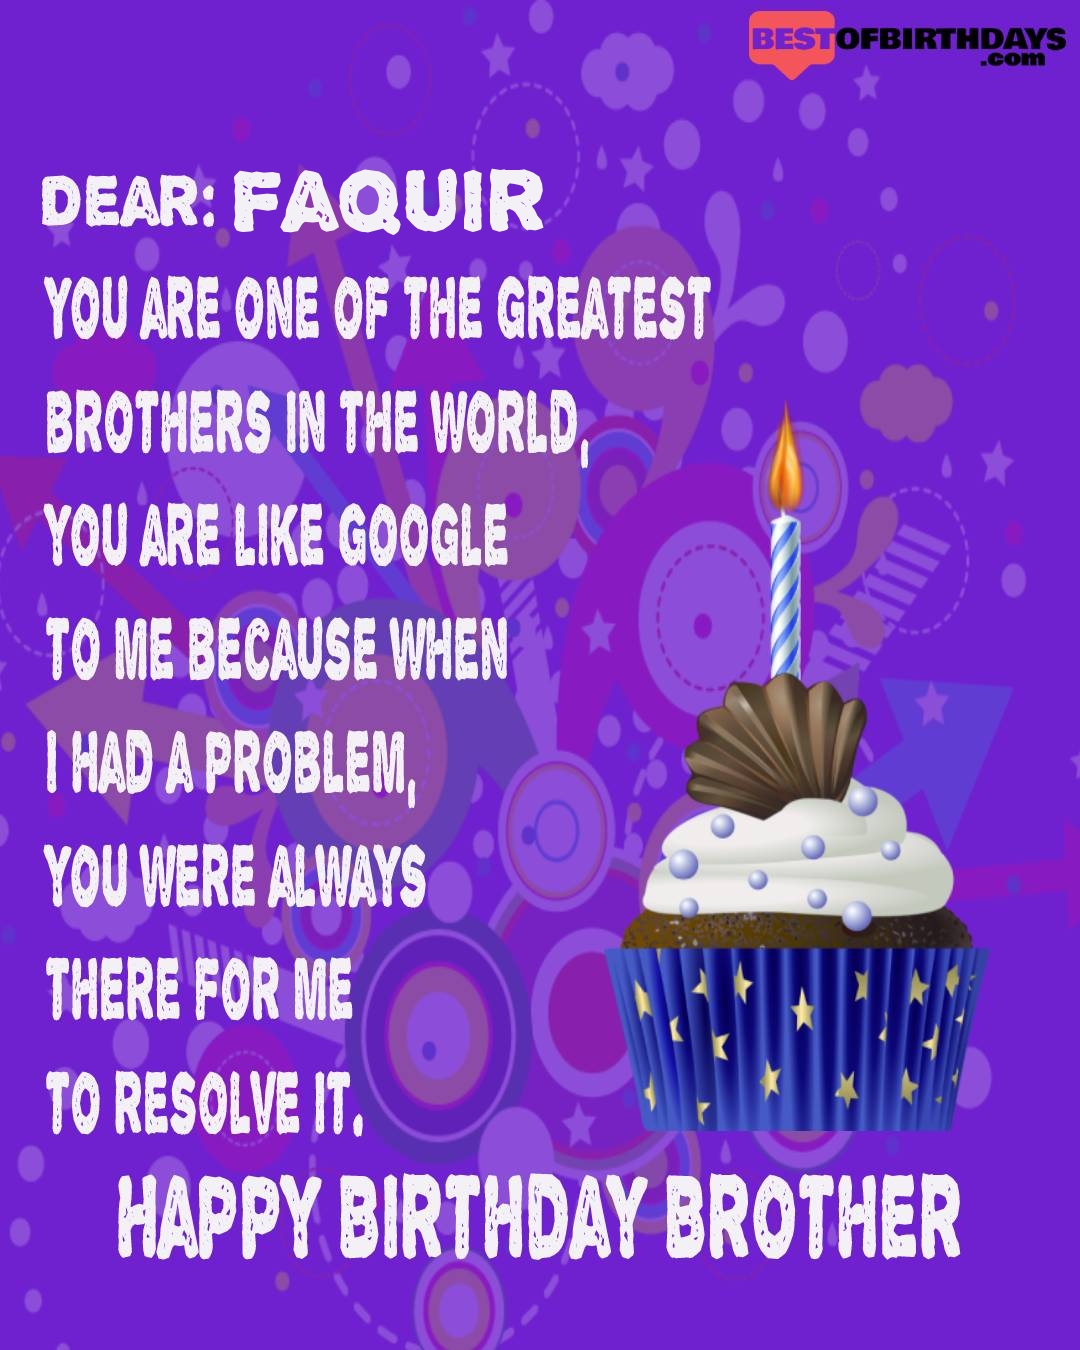 Happy birthday faquir bhai brother bro